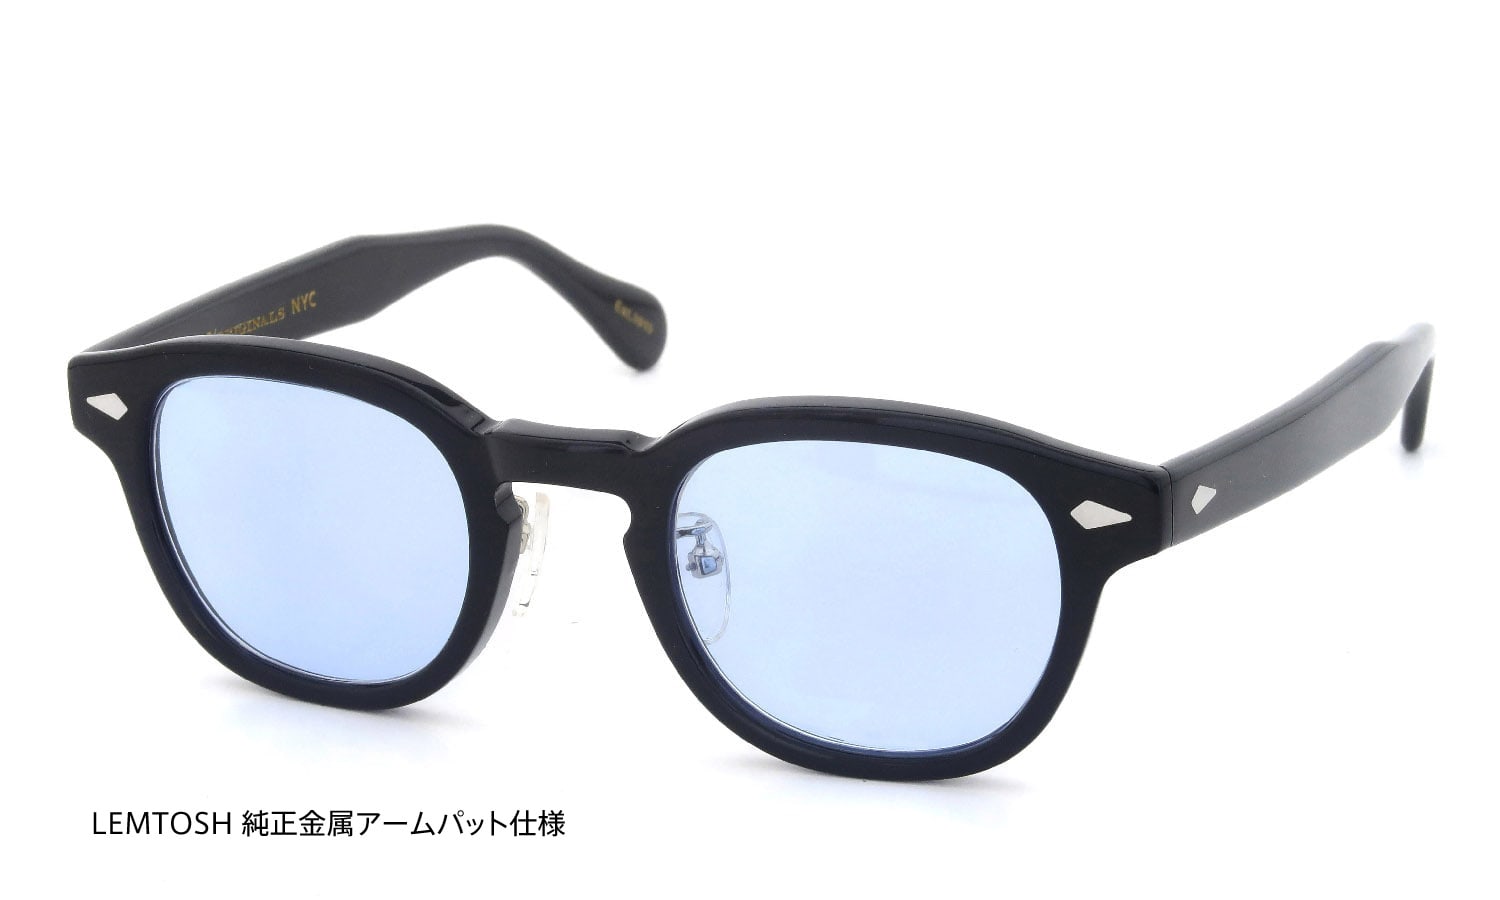 【極美品】日本限定 モスコット ミルゼン 46 ブラック ライトブルーレンズ純正メガネクロス